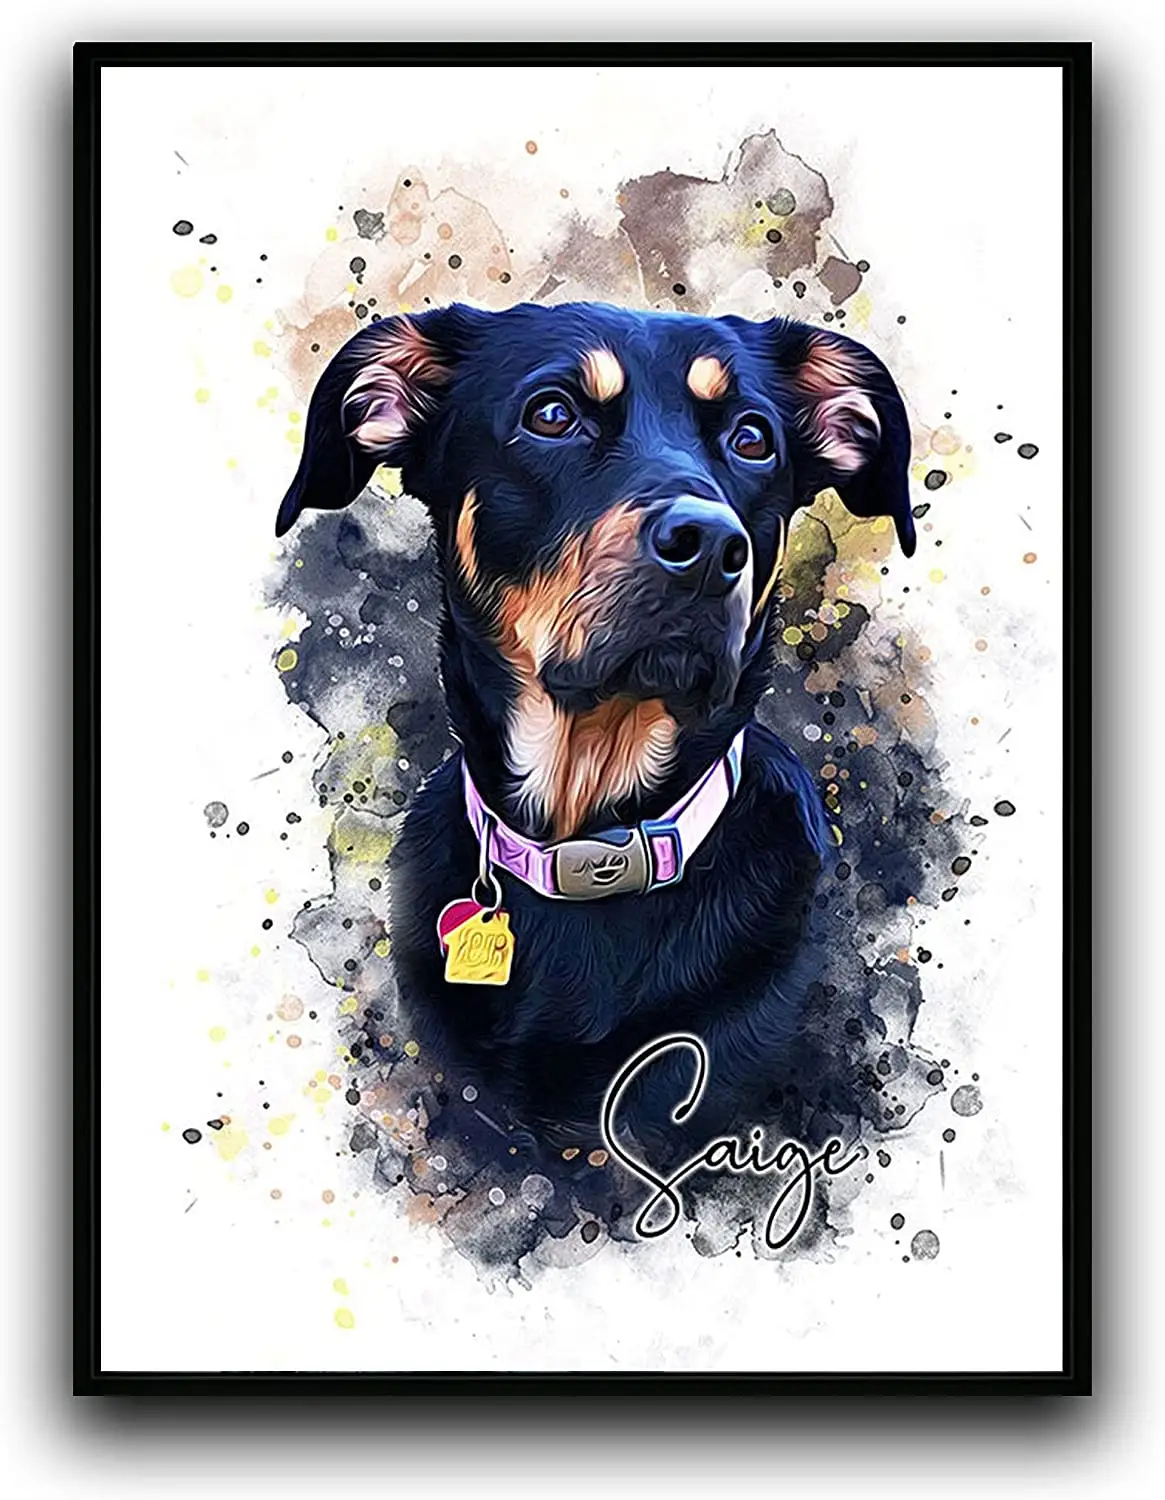 Hongya özel köpek/kedi portre suluboya resim çerçeveli tuval baskılar ile fotoğraf duvar sanatı ev dekorasyon için